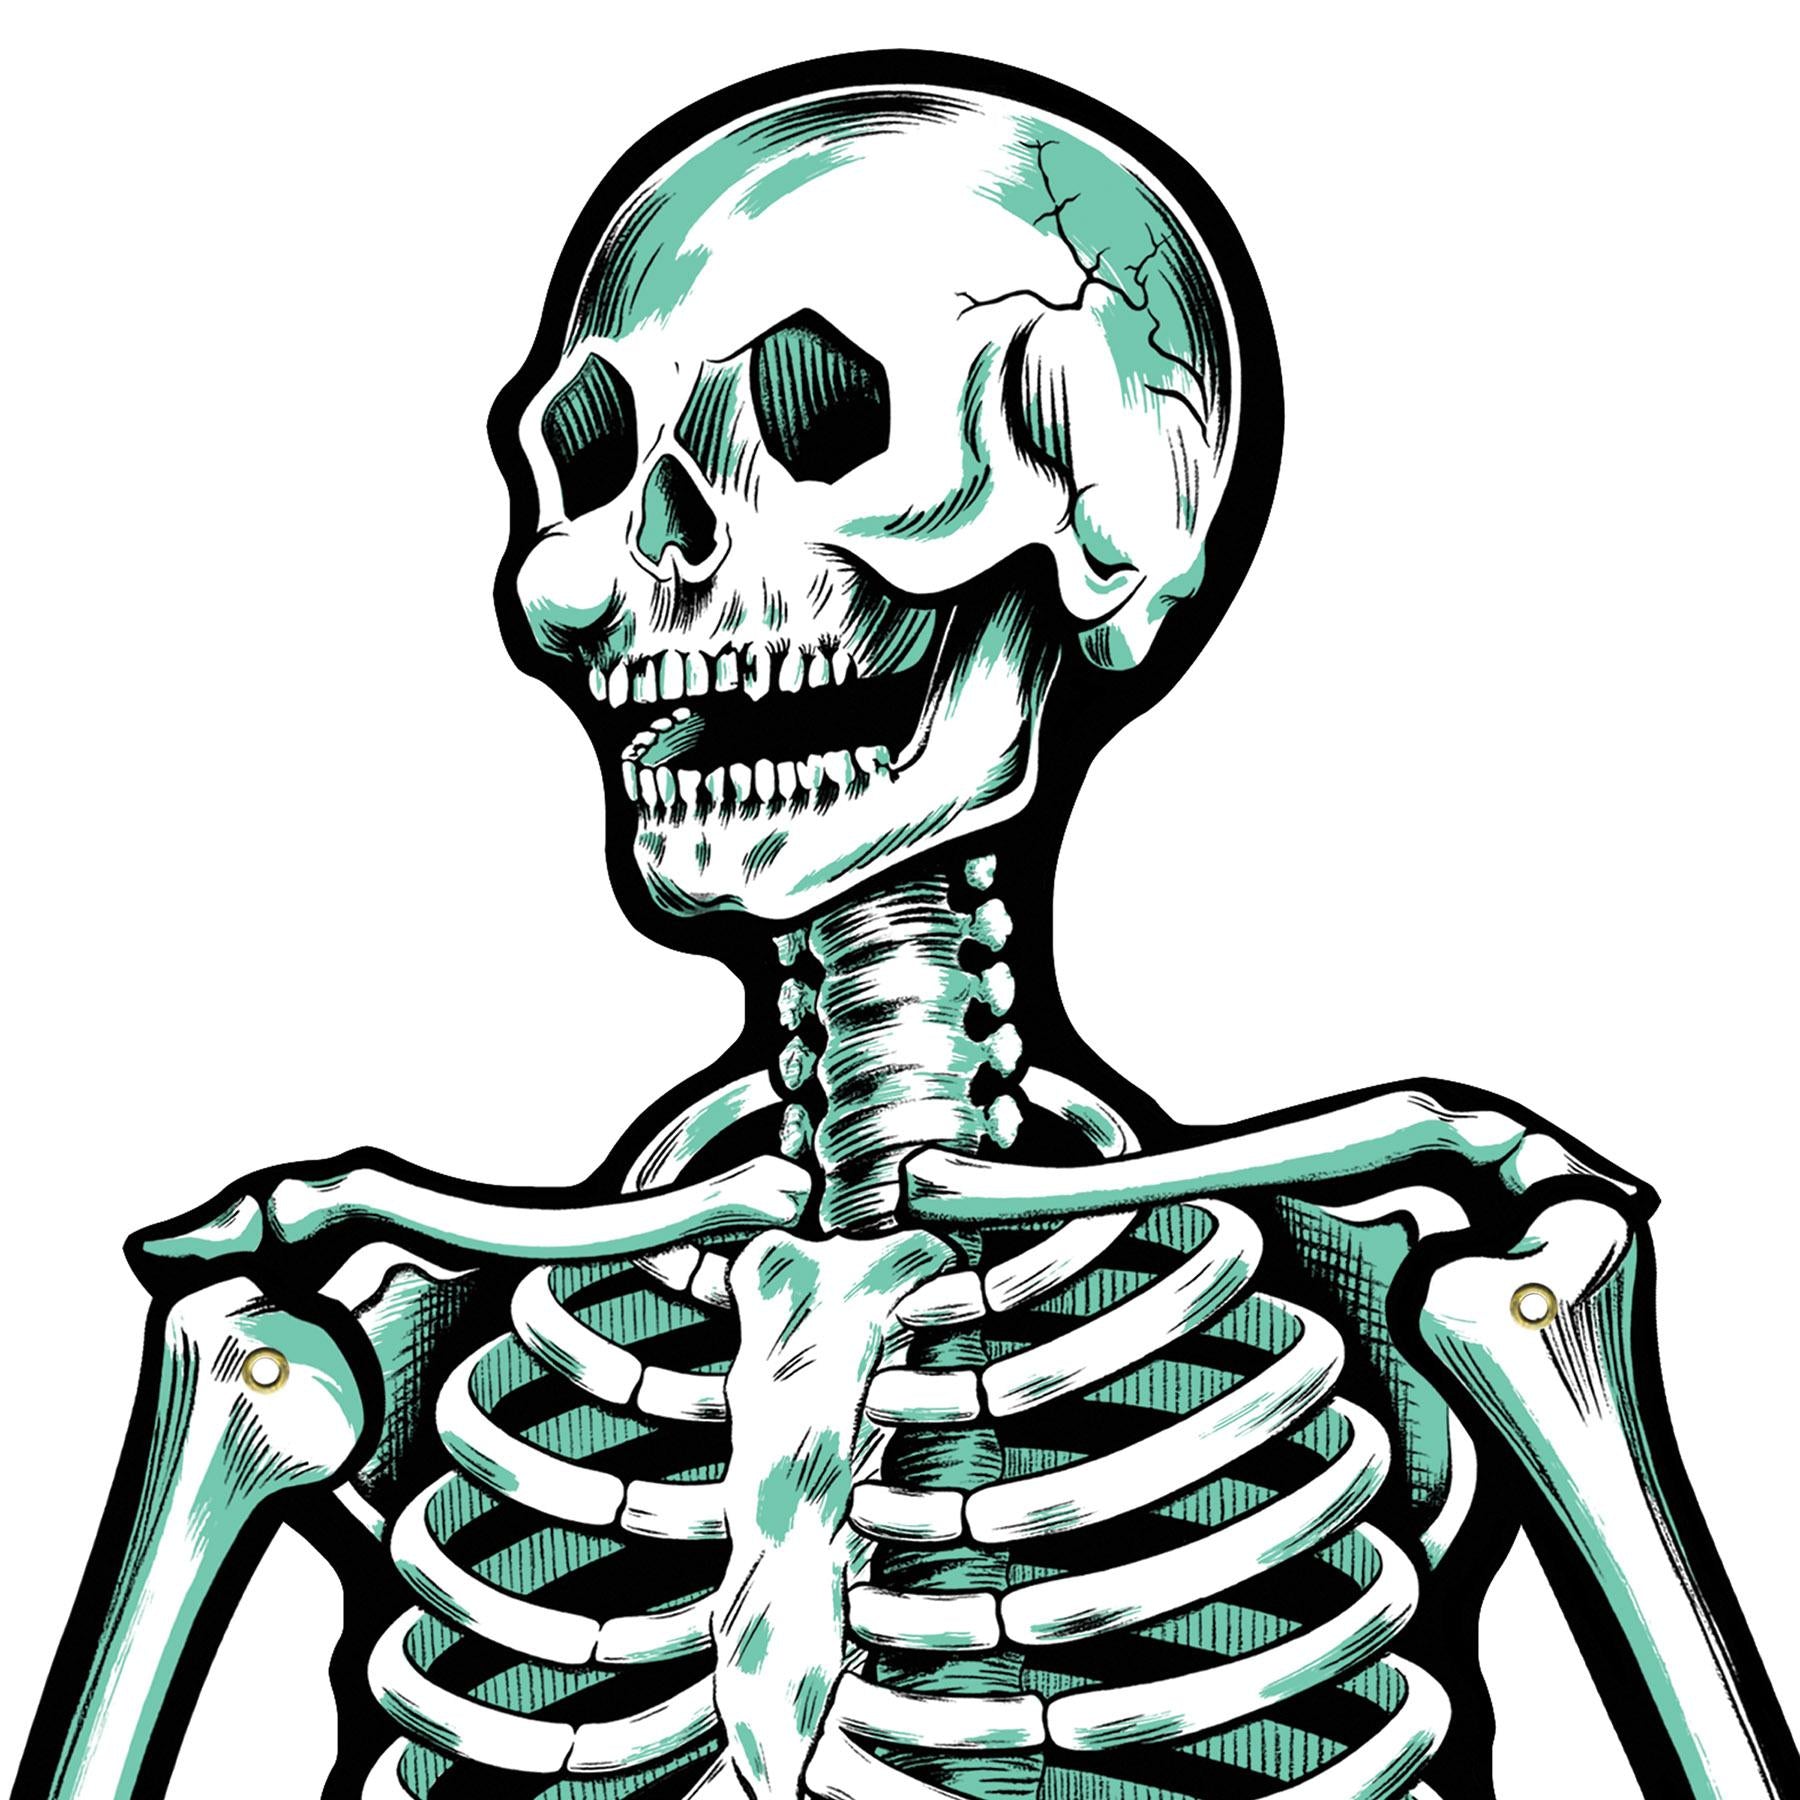 Beistle Halloween Jointed Skeletons (2/Pkg)